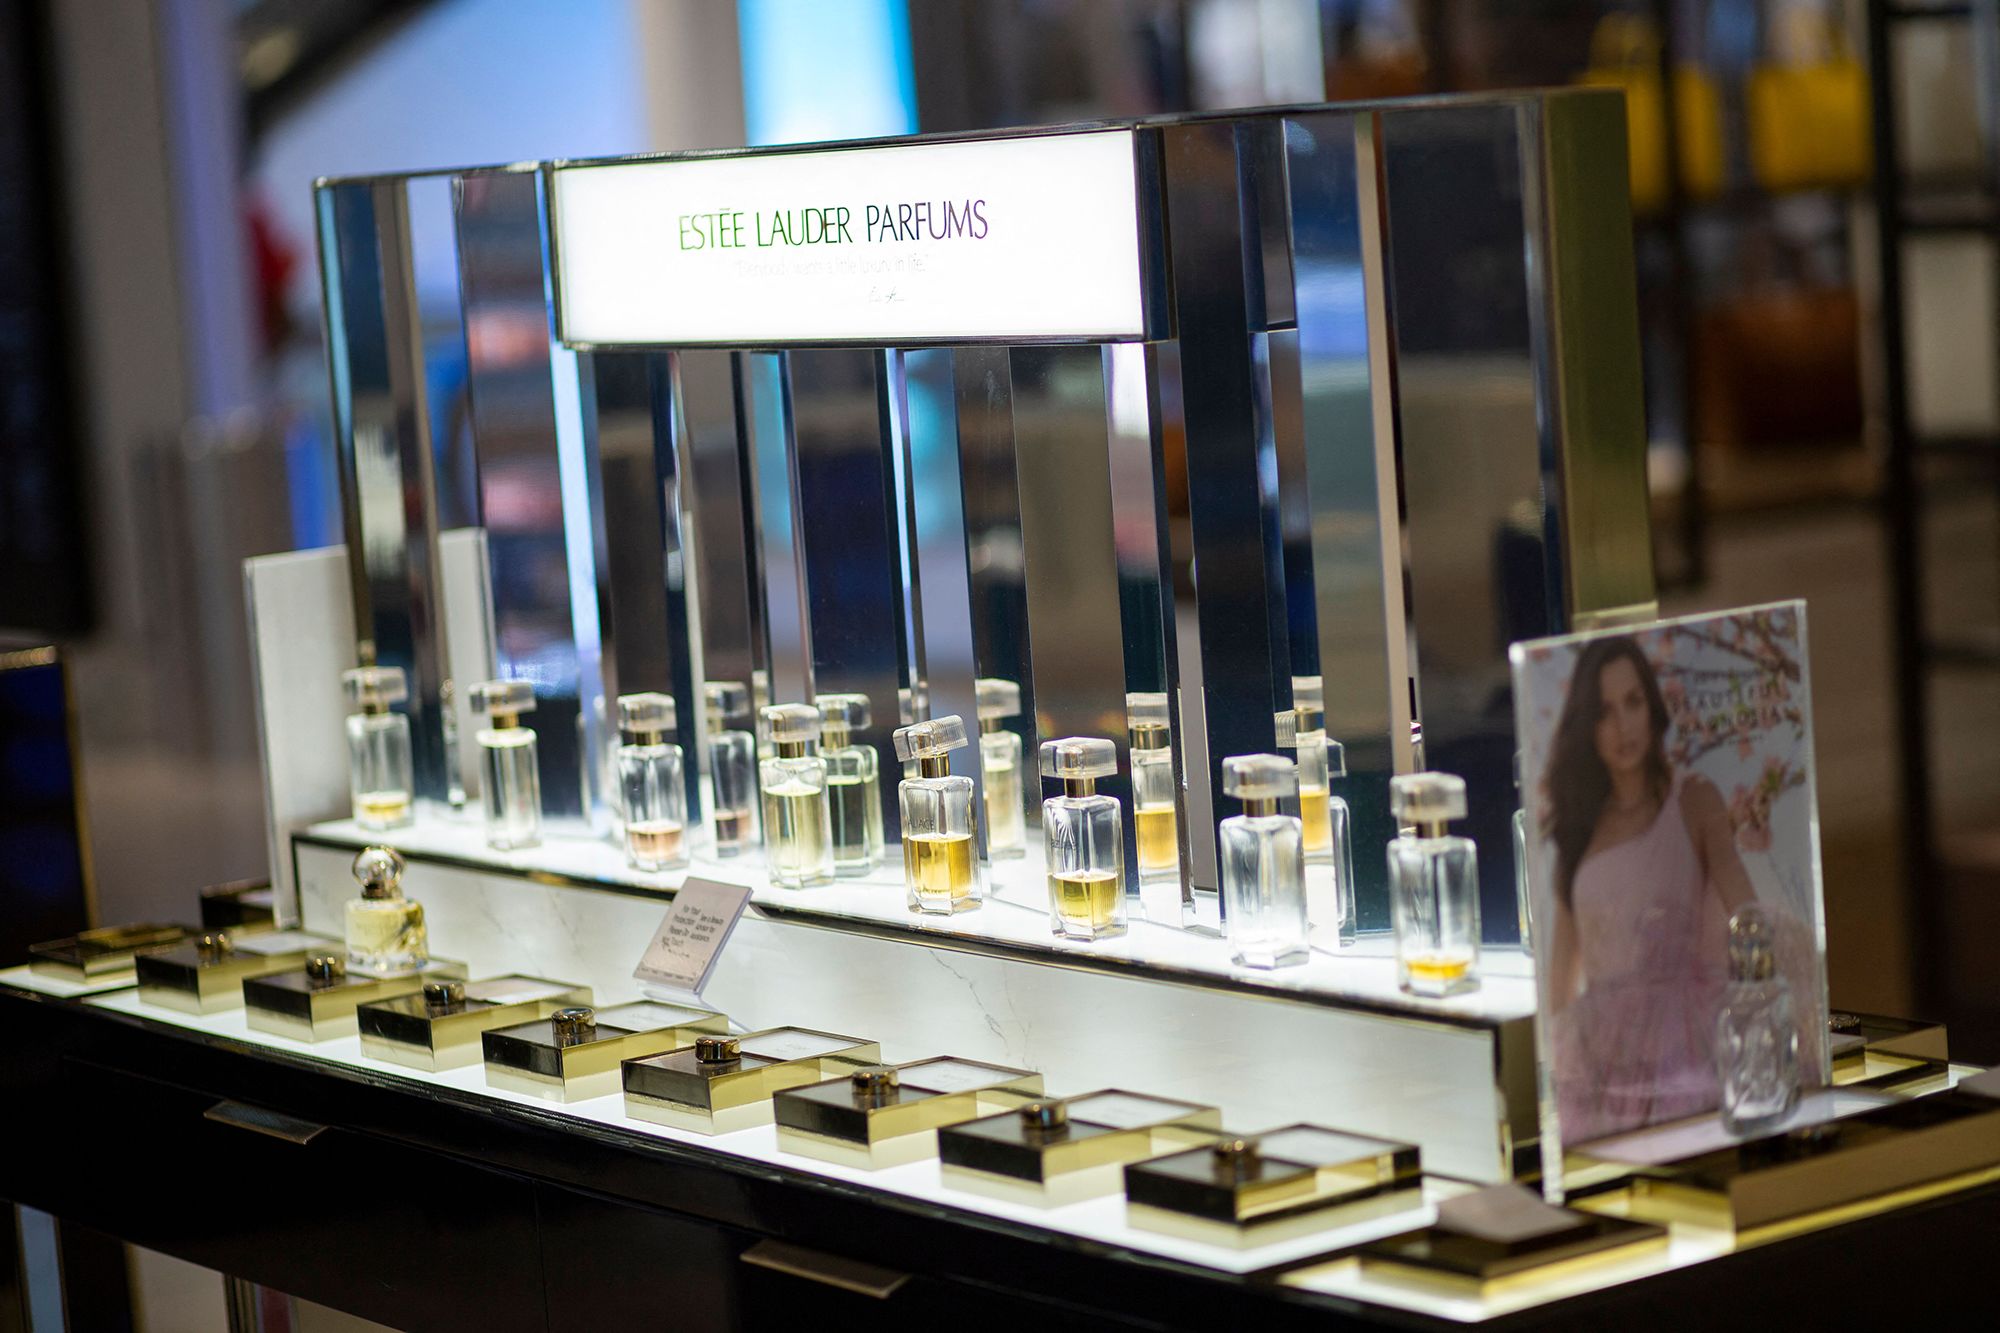 Chanel N5 Huge Store Display Perfume Bottle Advertising, France